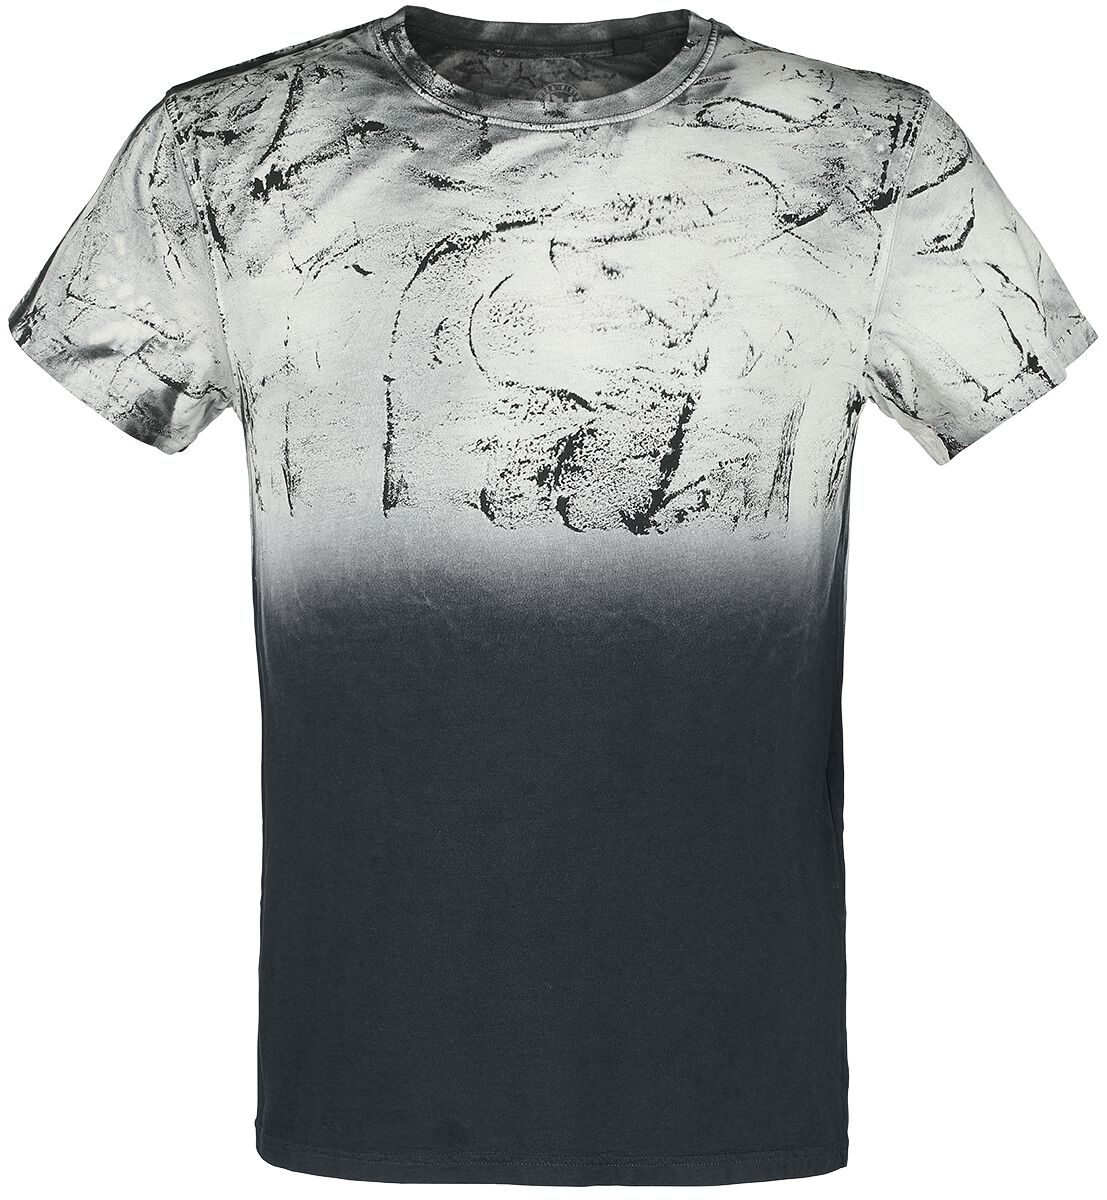 Outer Vision T-Shirt - Man`s T-Shirt Spatolato - S bis 4XL - für Männer - Größe S - schwarz/grau